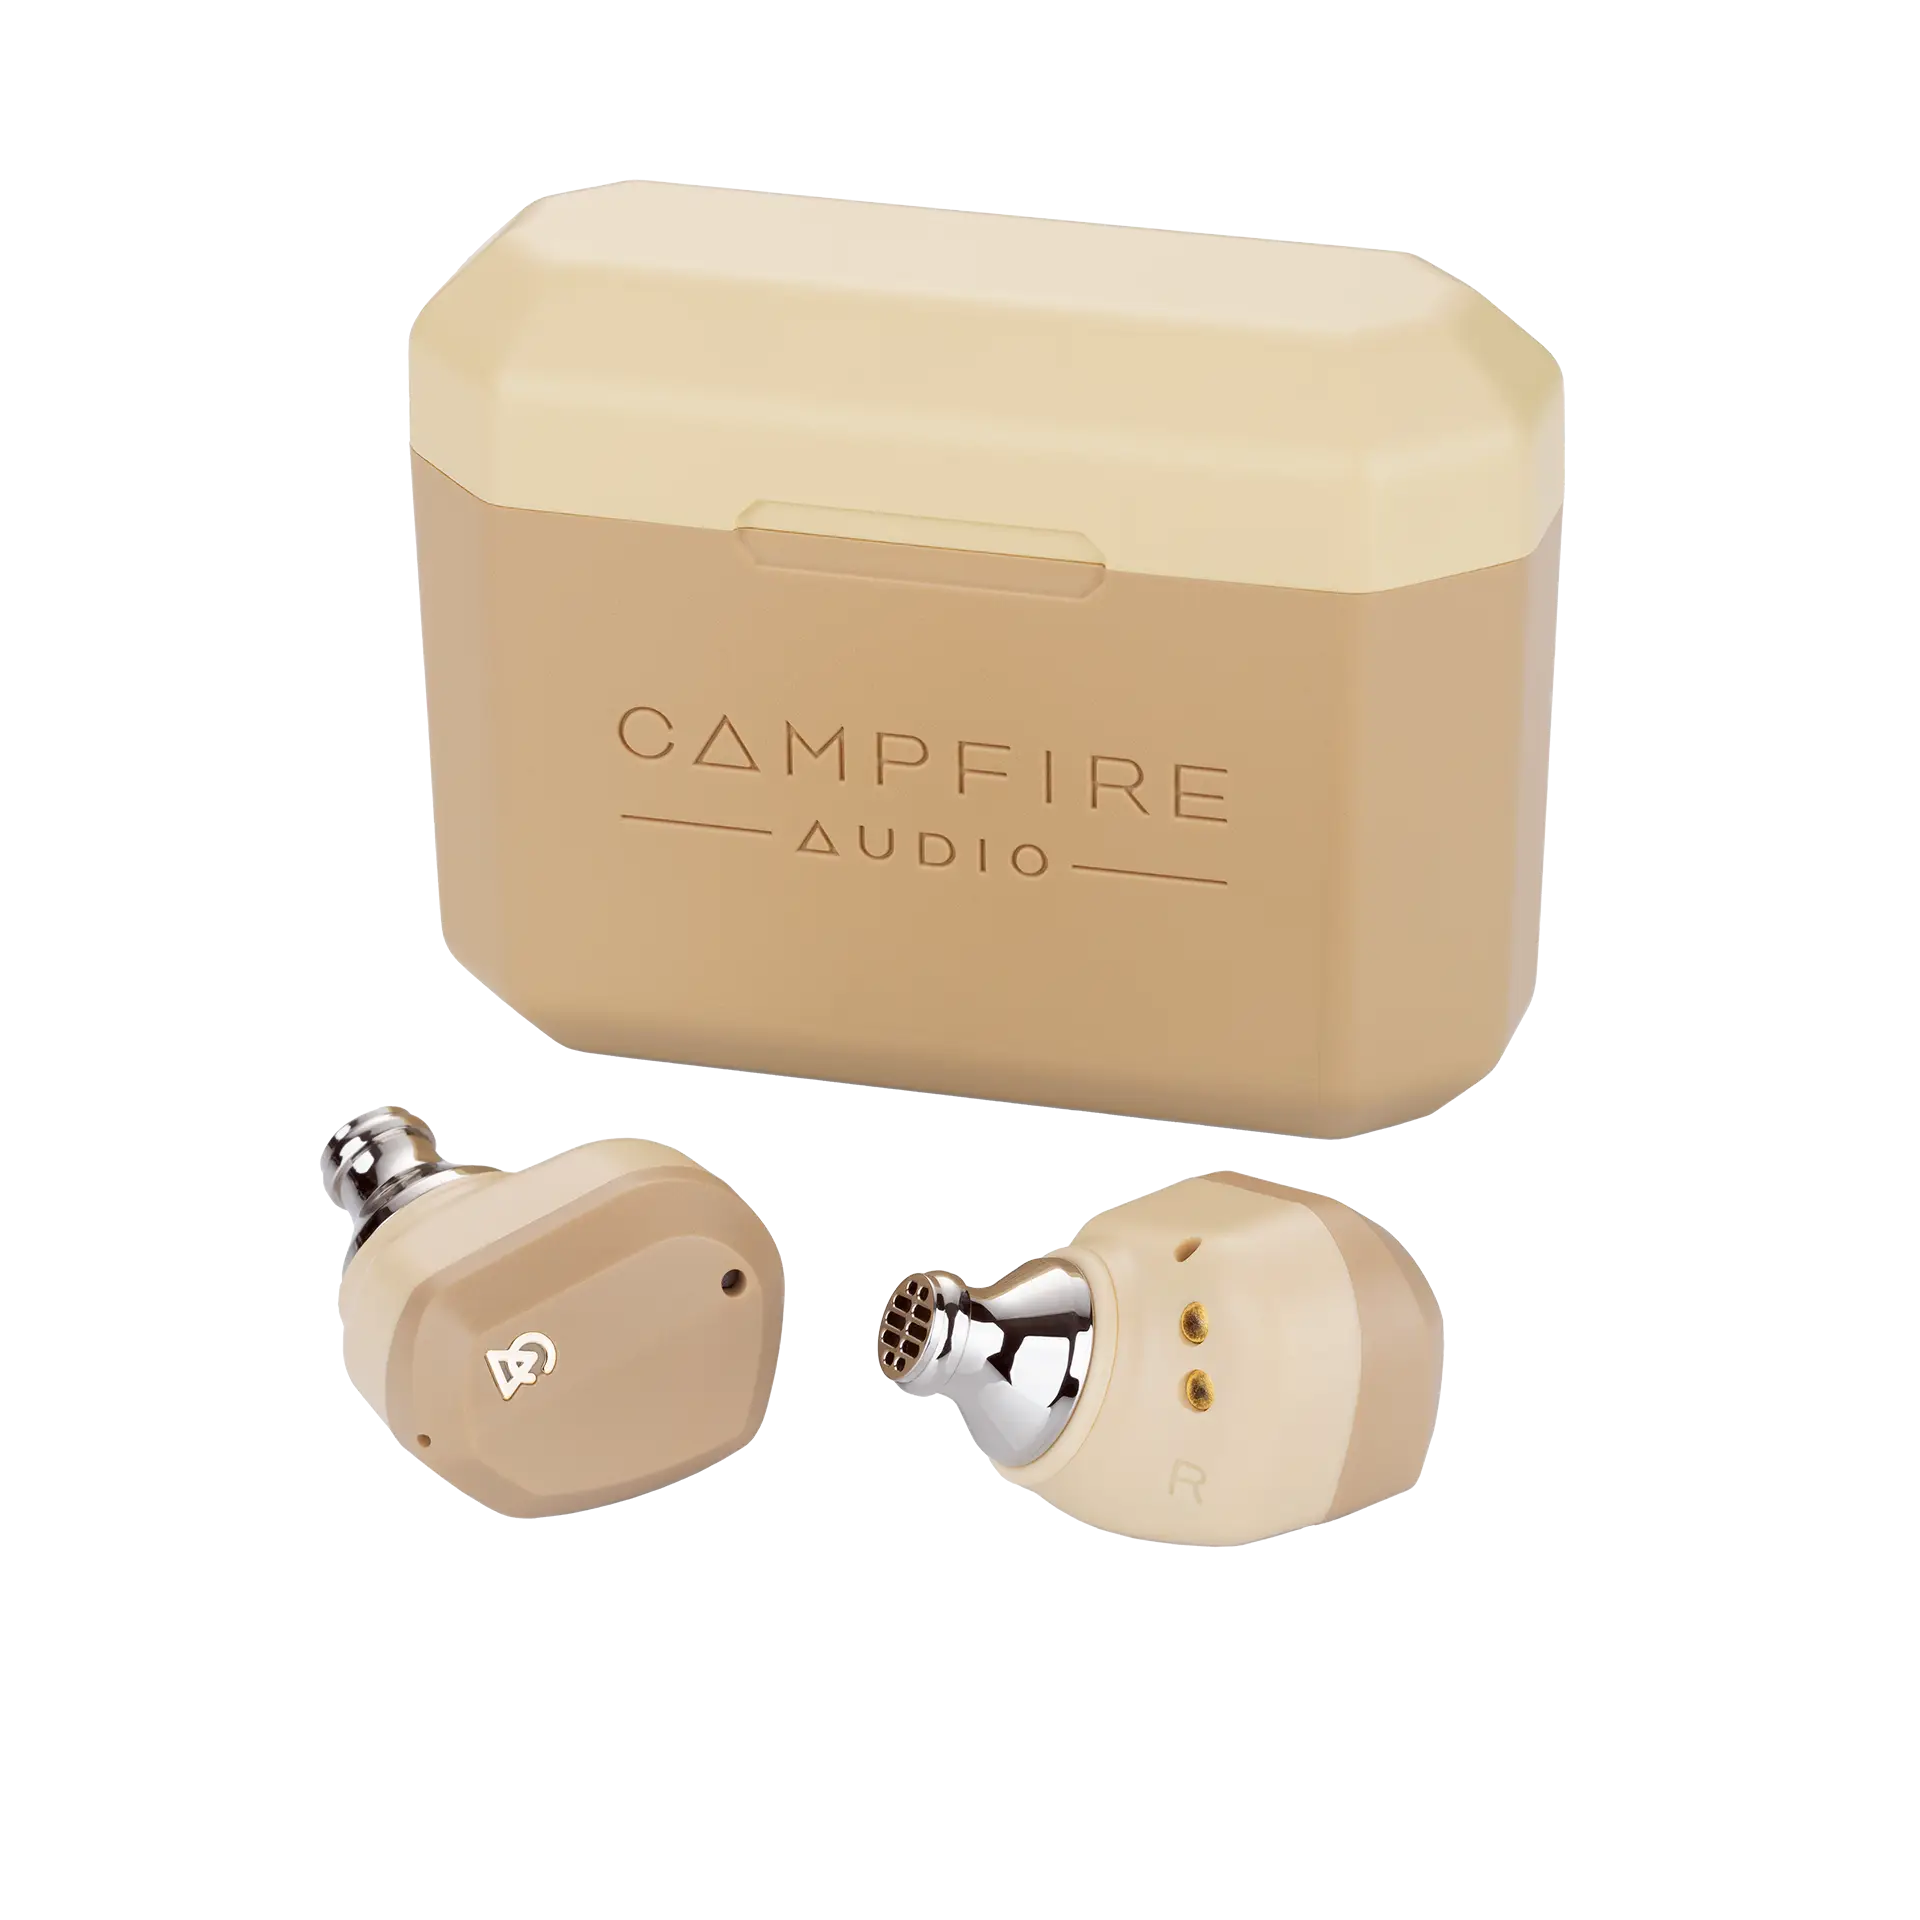 Campfire Audio Orbit - True Wireless In Ear Earphones